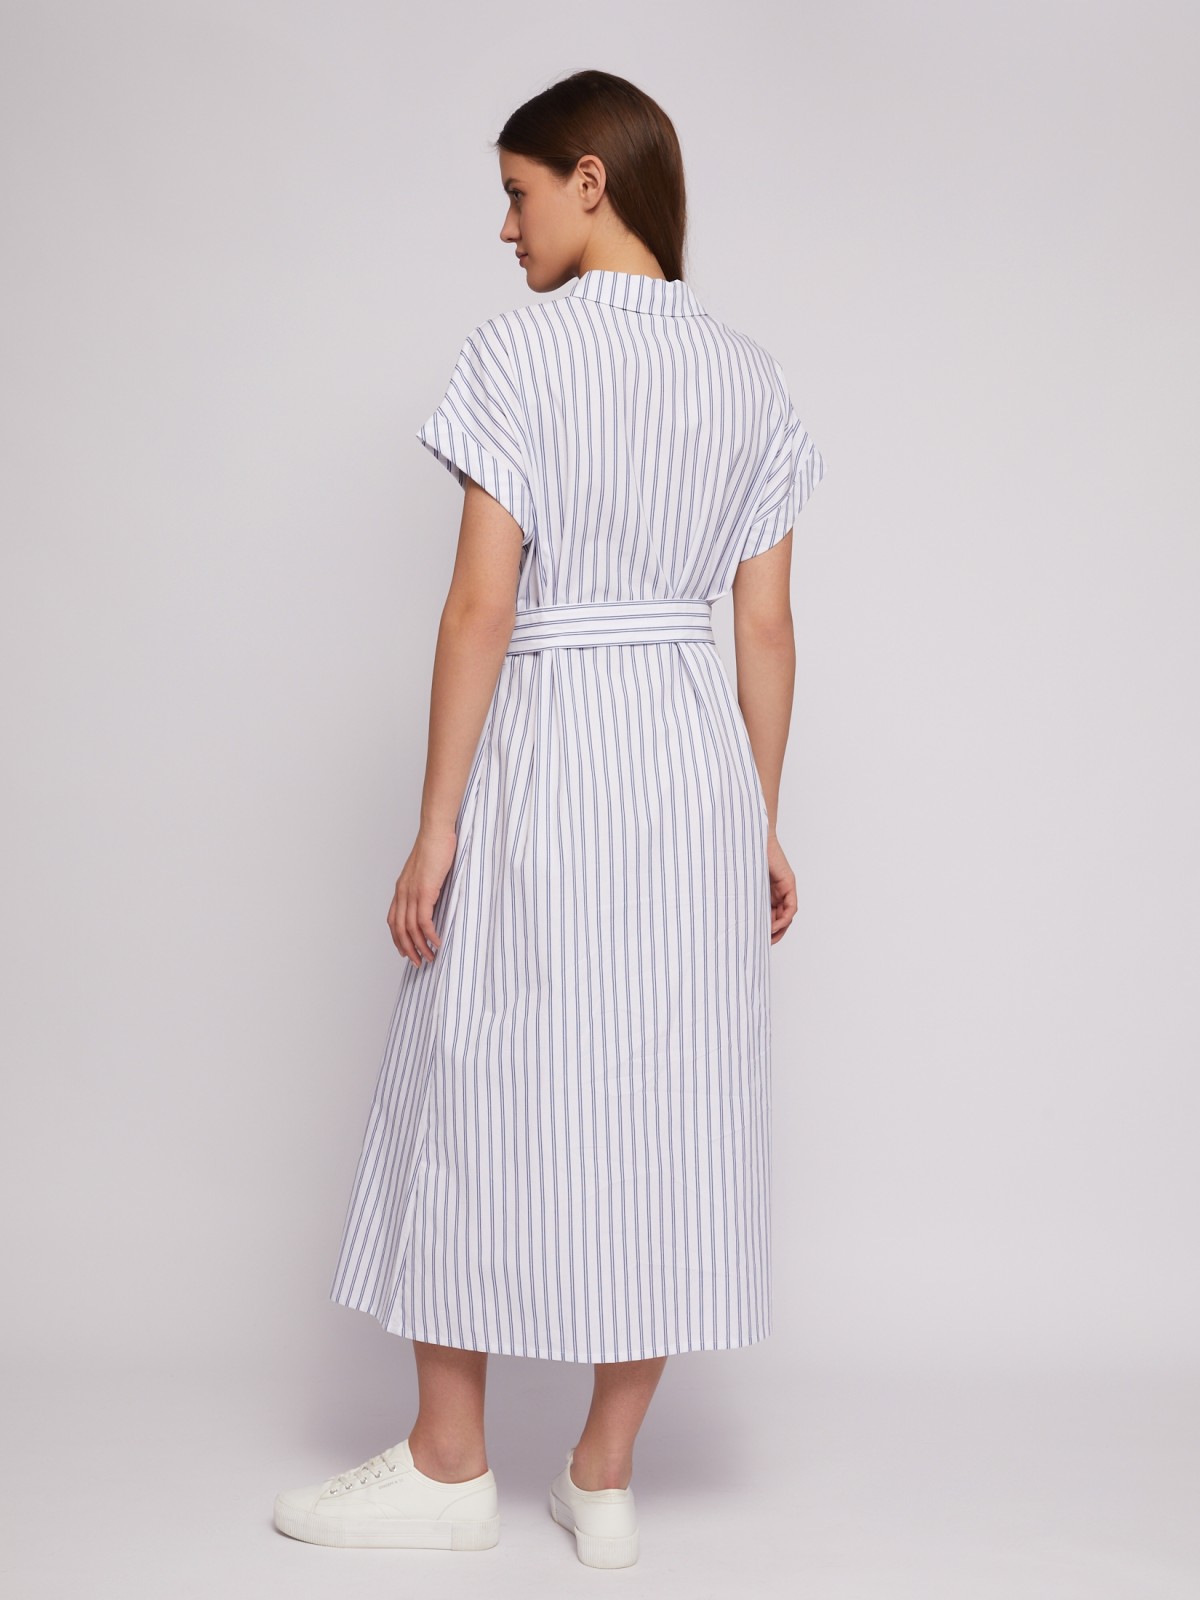 Платье-рубашка из хлопка с коротким рукавом и узором в полоску zolla 024218262363, цвет белый, размер S - фото 6